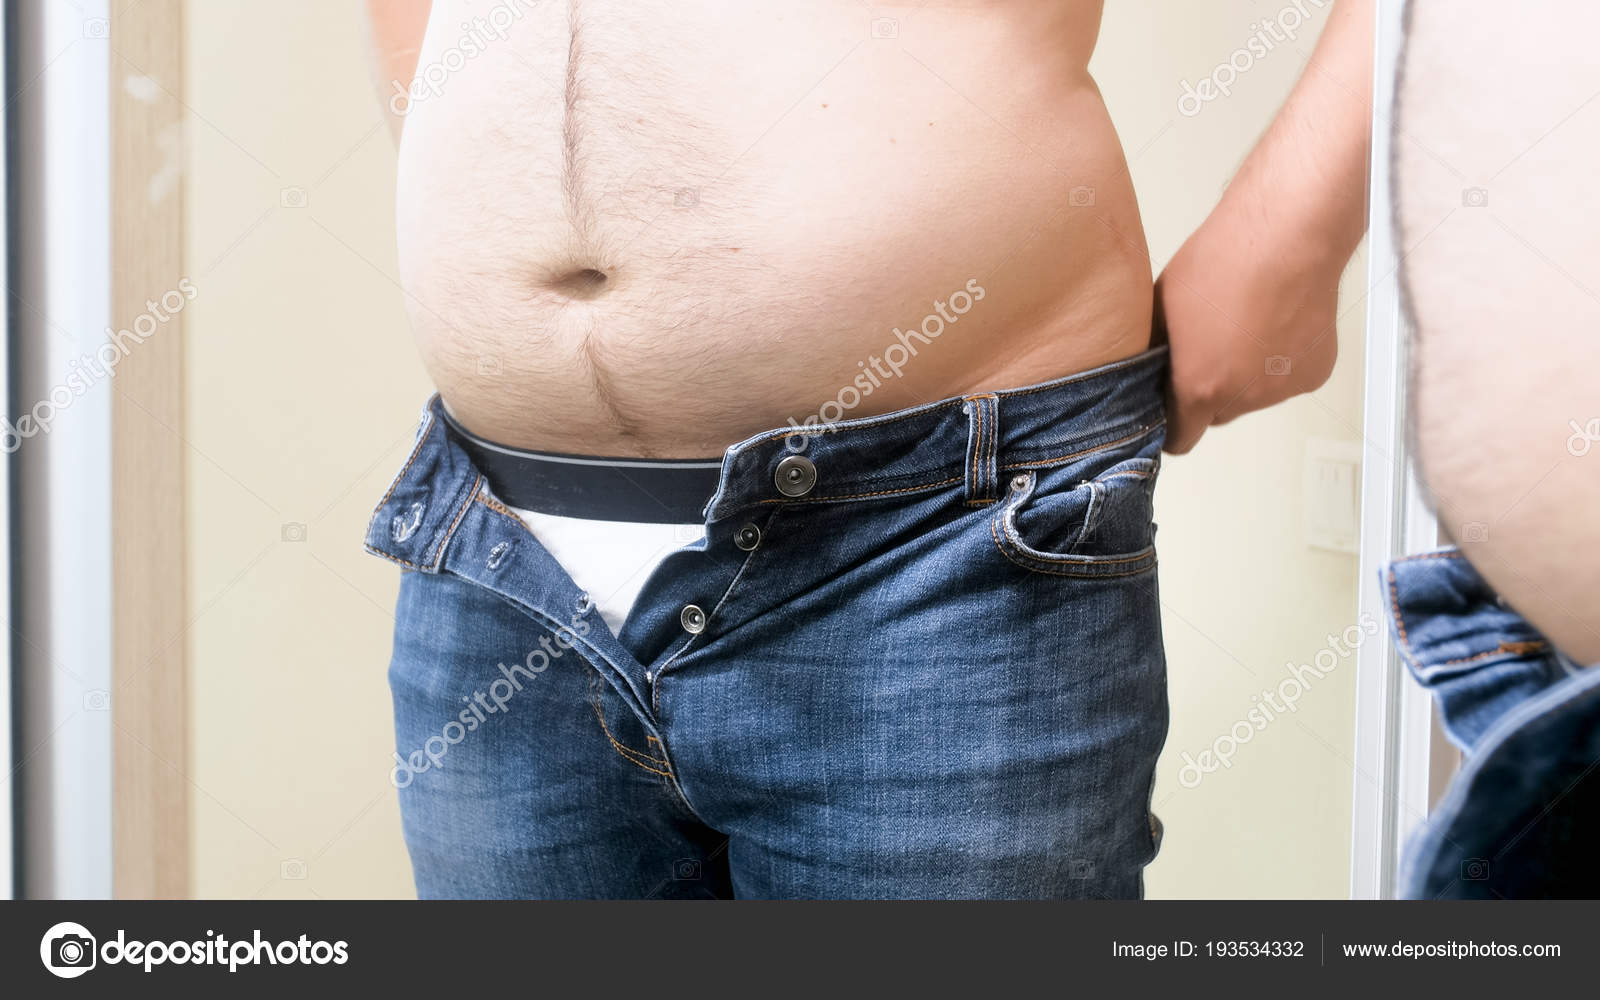 fat man in jeans